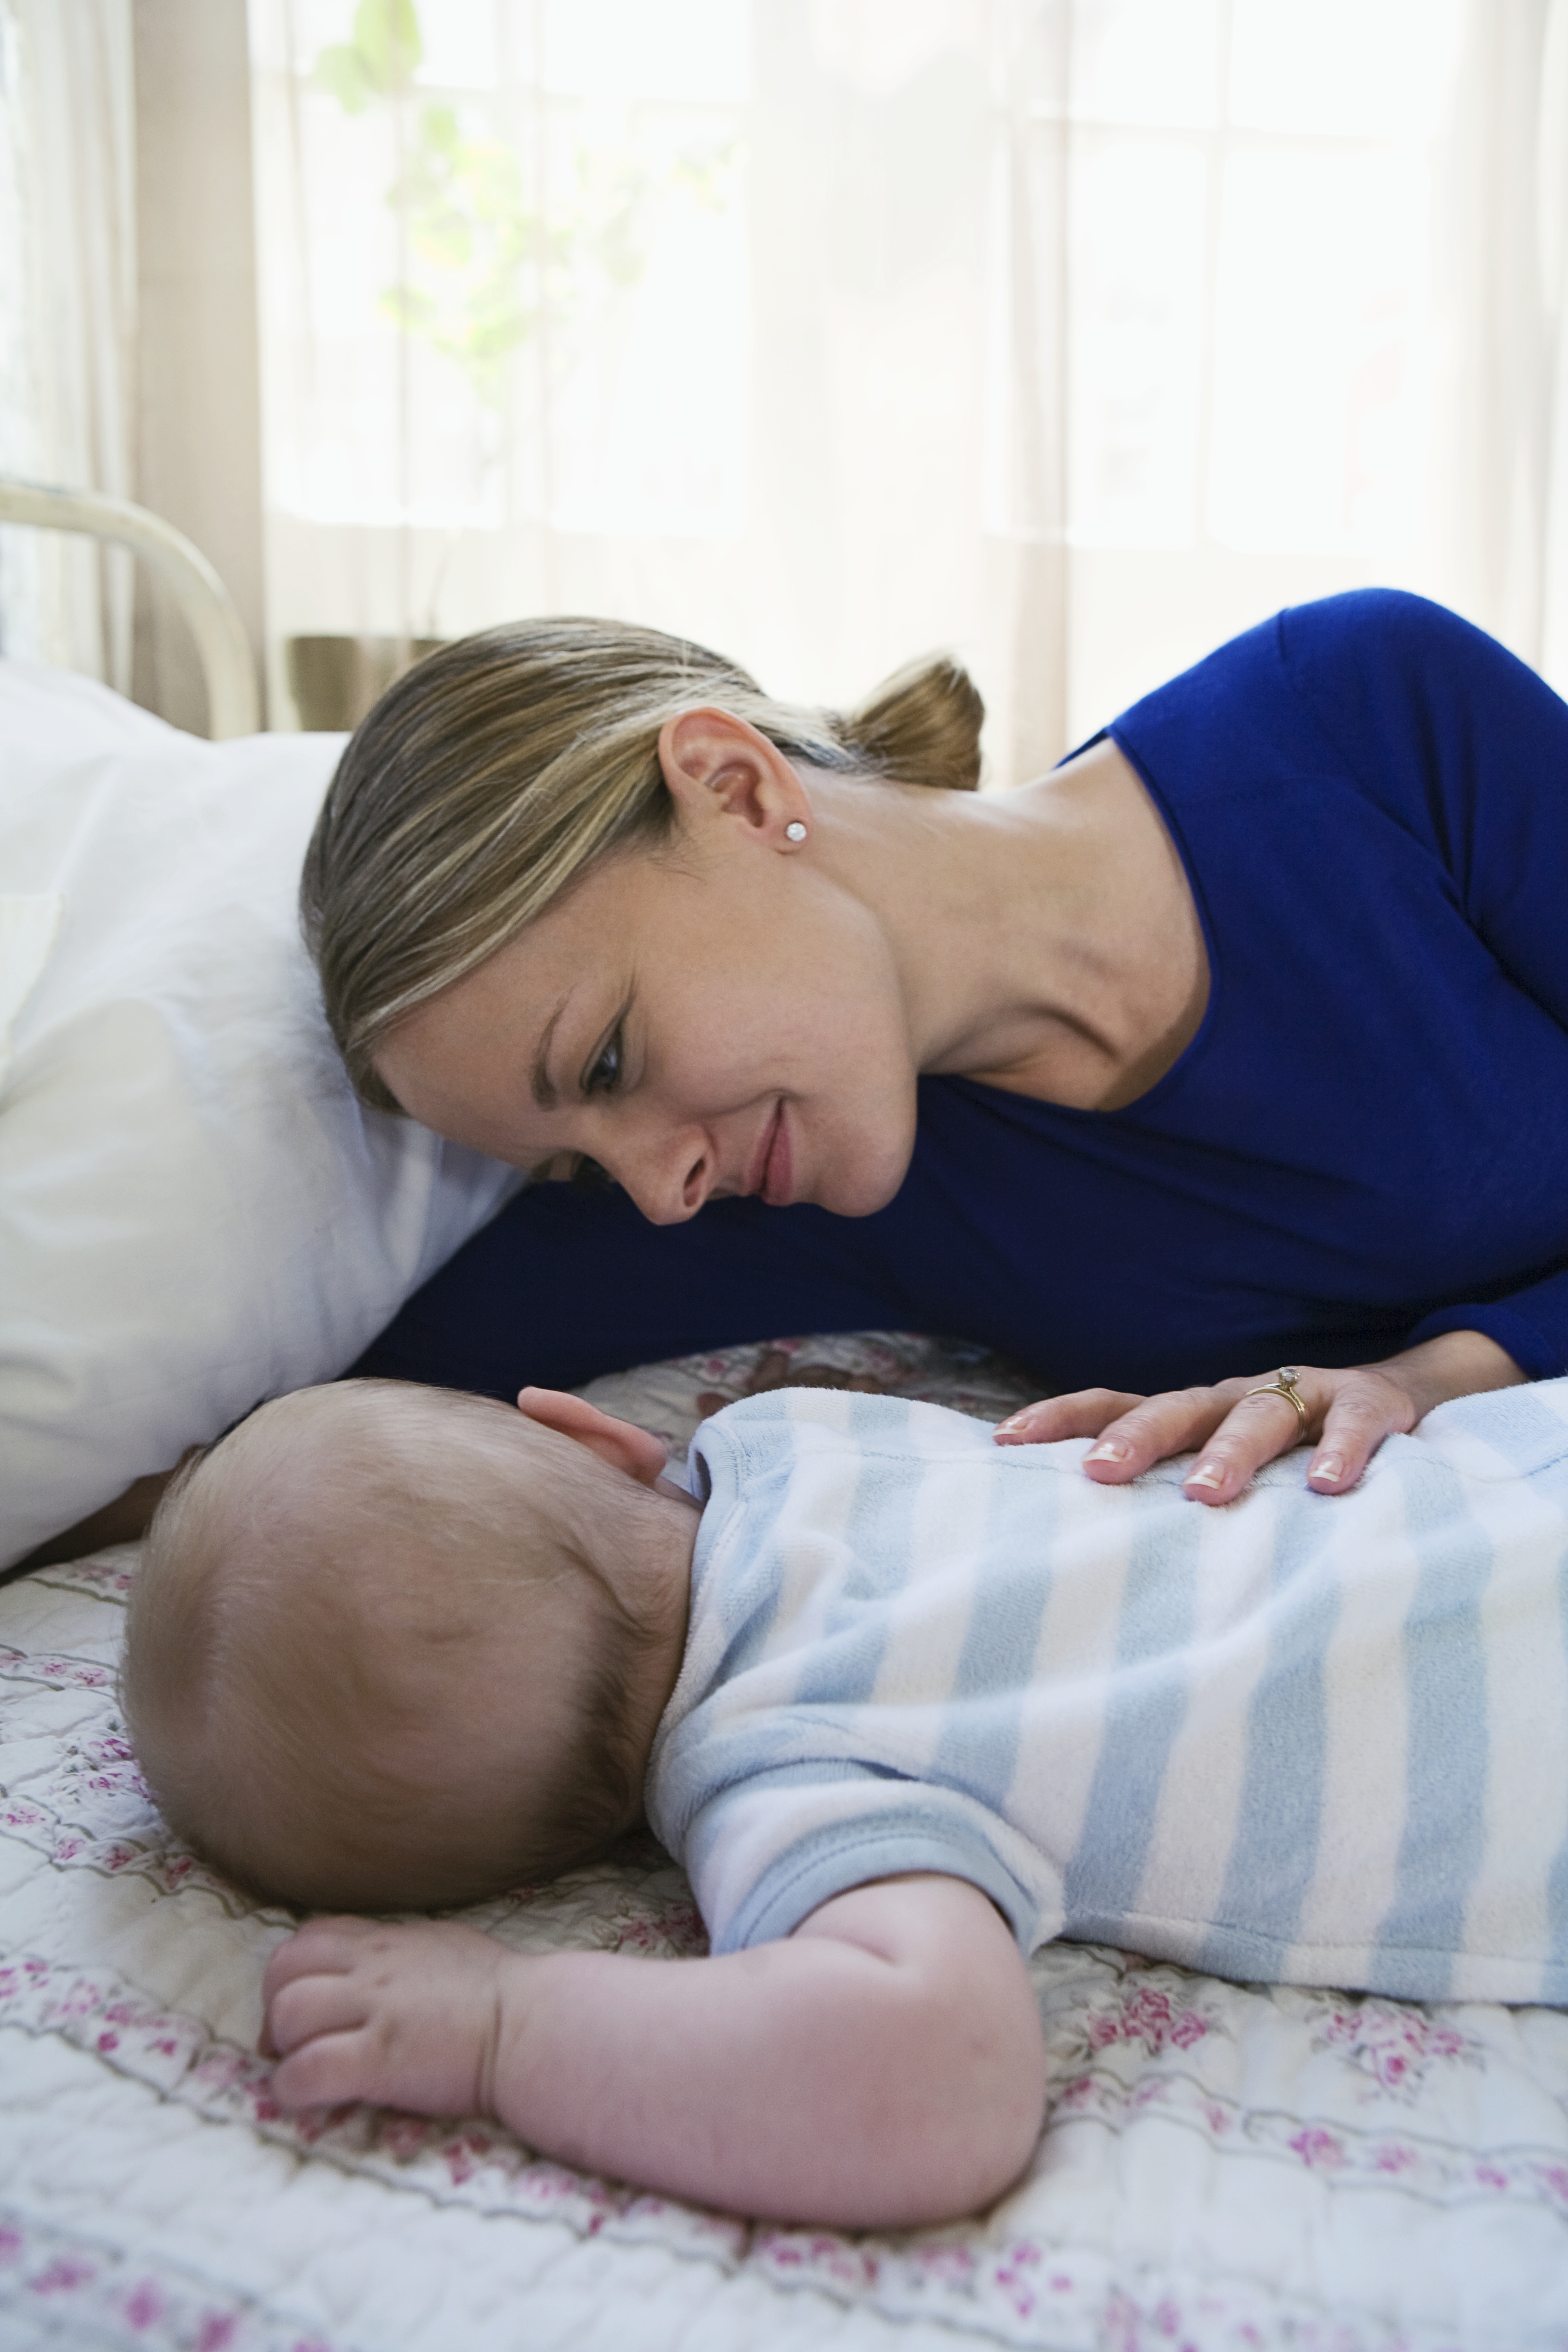 Une mère veille sur son bébé endormi | Source : Getty Images